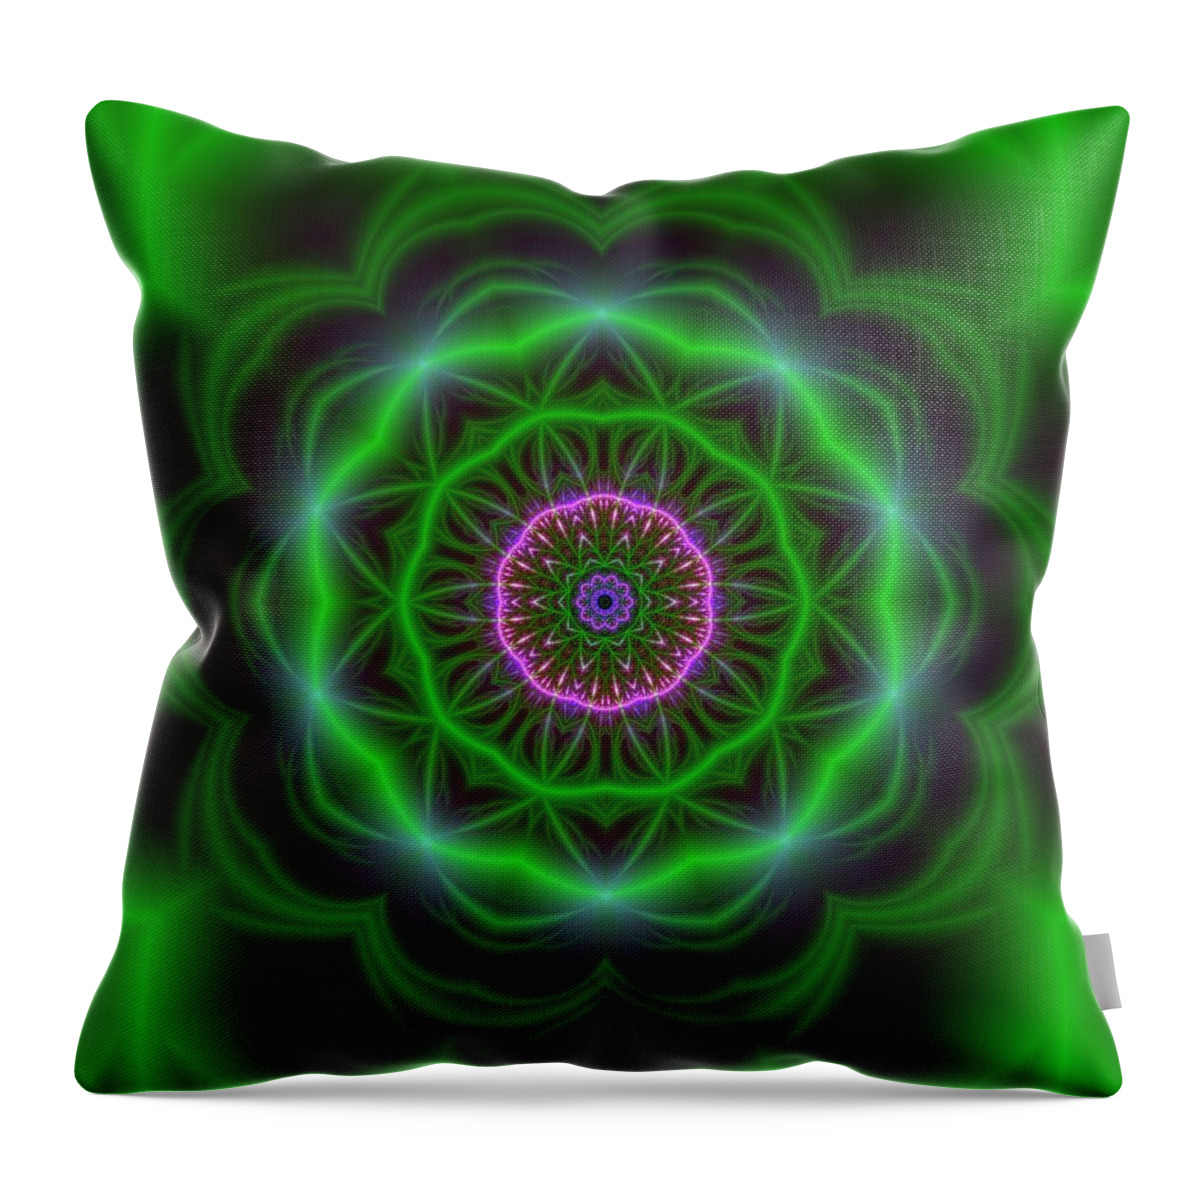 Mandala Throw Pillow featuring the digital art Transition Flower 10 beats by Robert Thalmeier